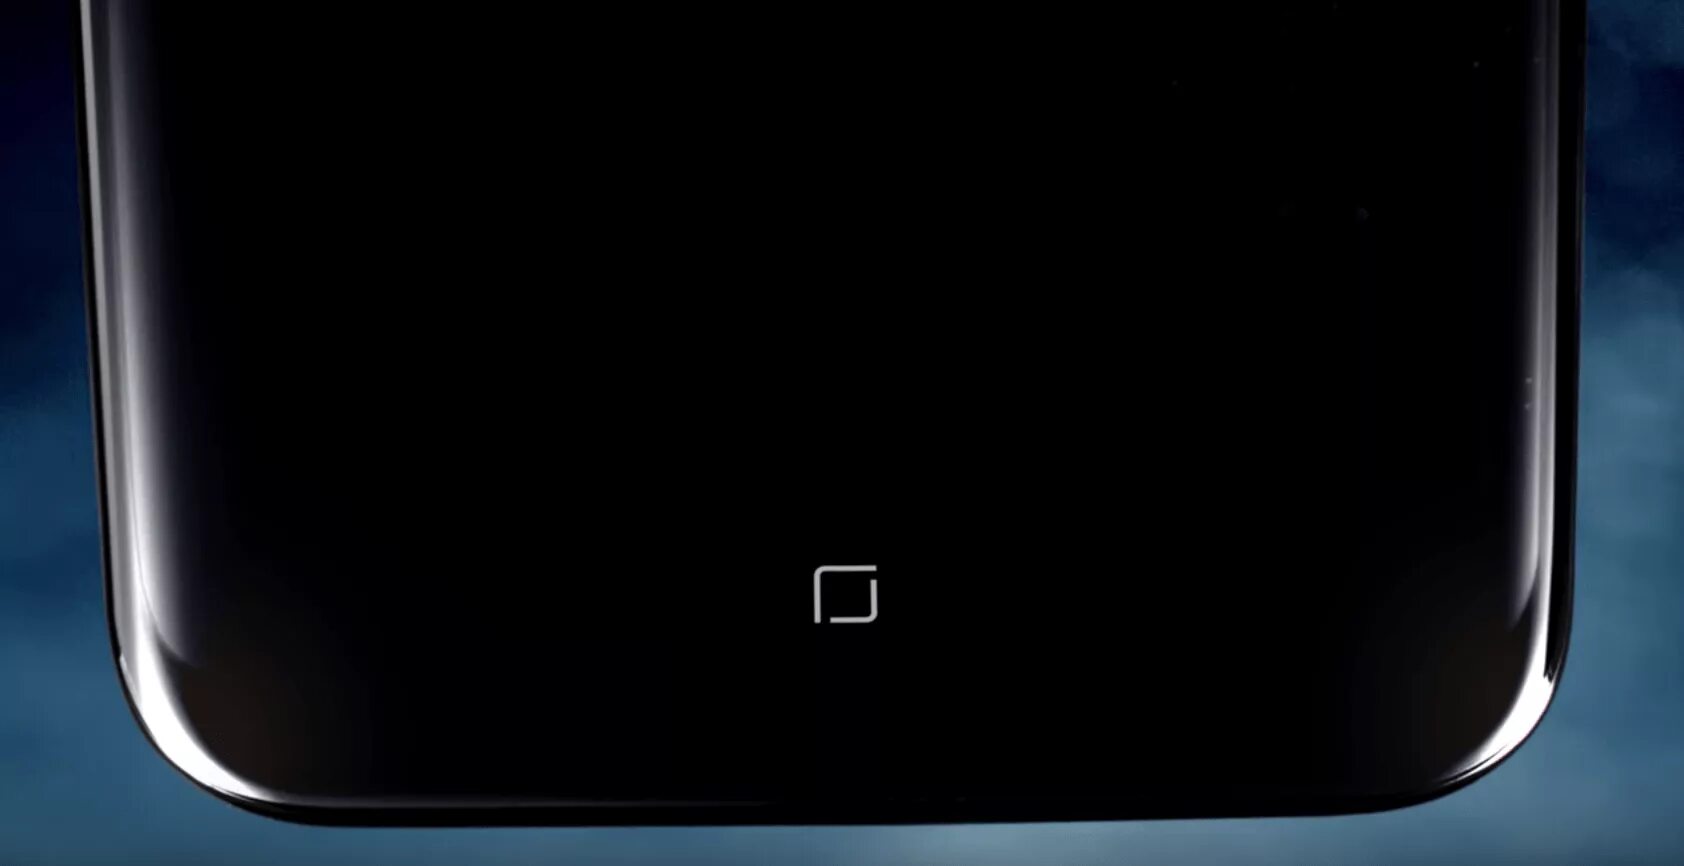 Кнопка домой. Galaxy s22. Заставка экрана при загрузке Samsung s8. Samsung s22 низ экрана черный экран. Экранный образ